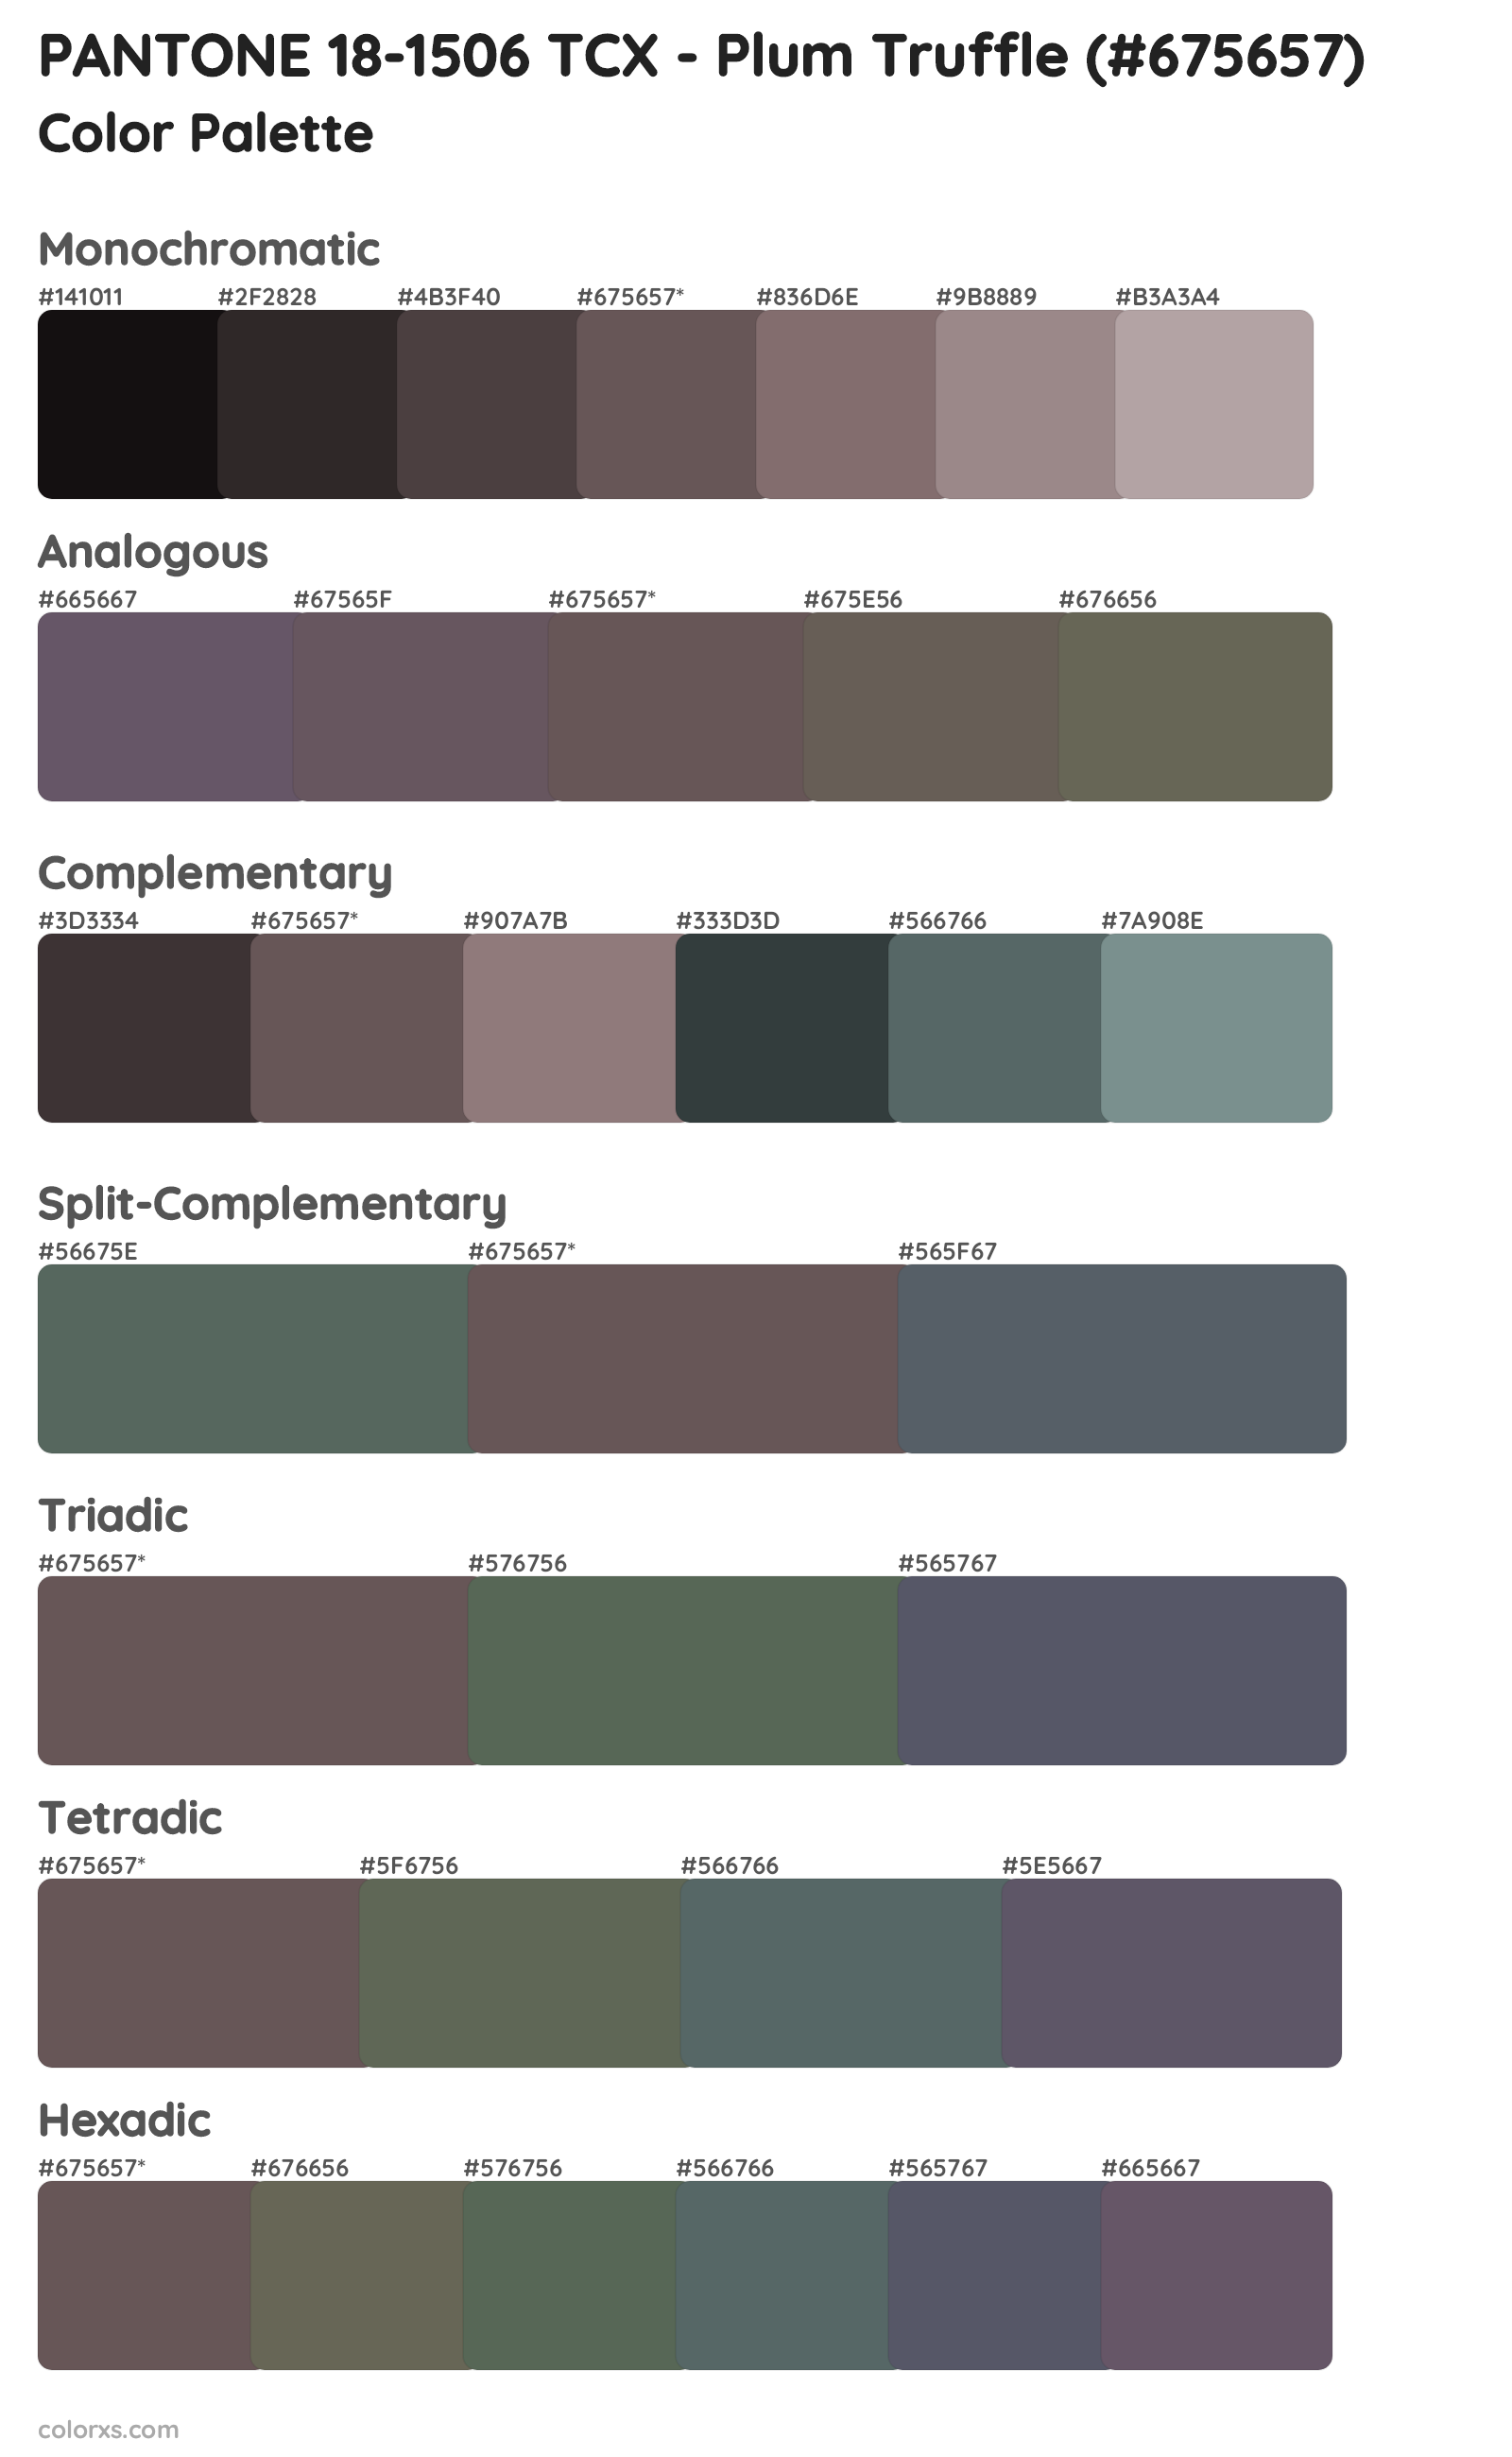 PANTONE 18-1506 TCX - Plum Truffle Color Scheme Palettes